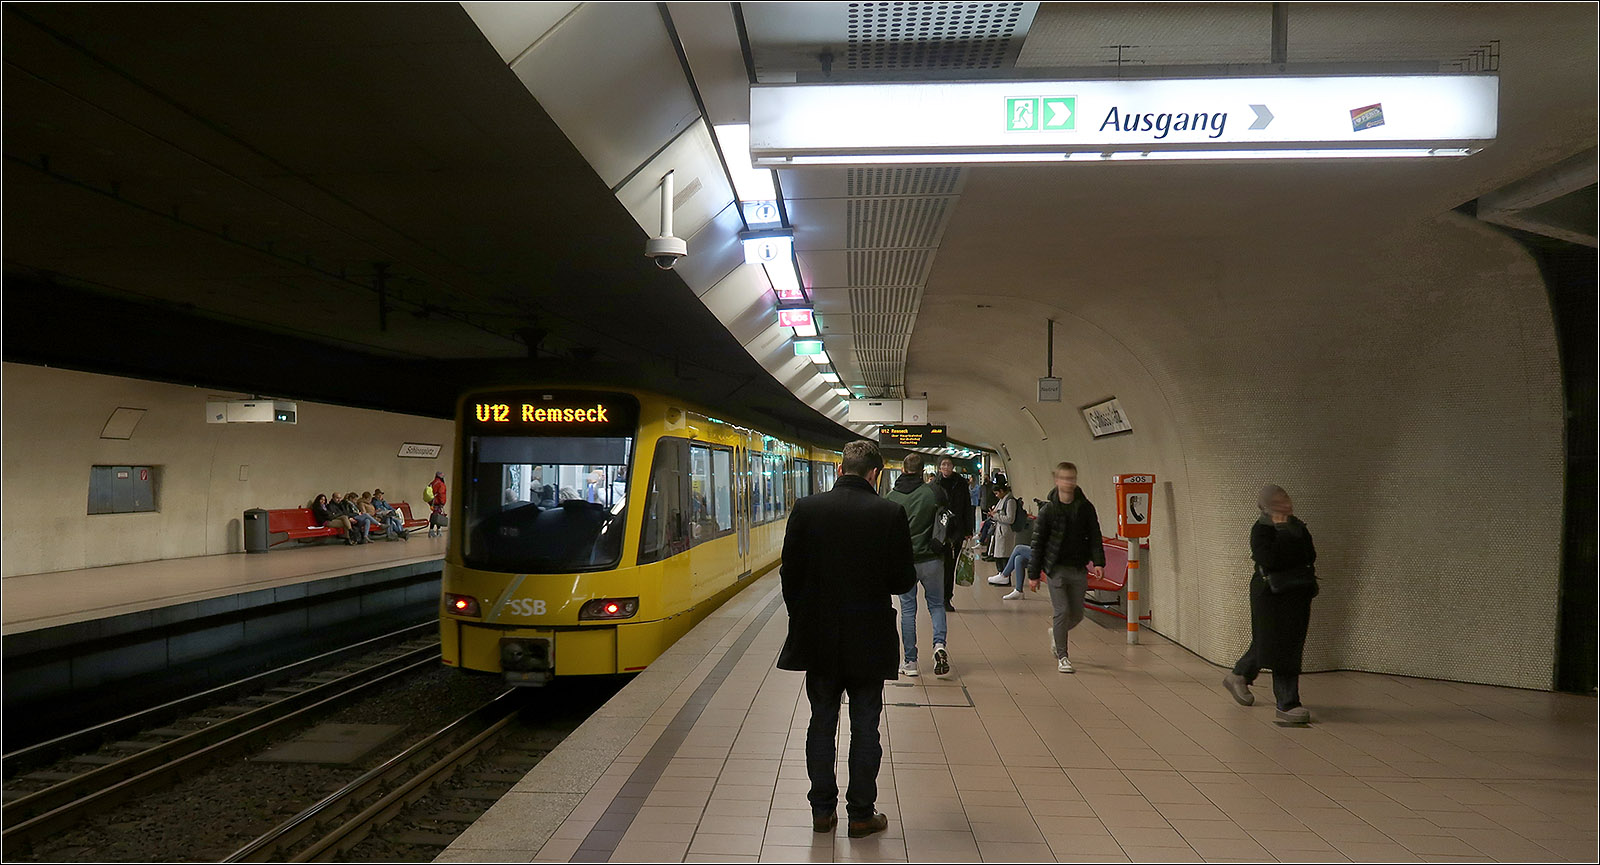 Einst ein Umsteigeknoten -

... im Stuttgarter Straßenbahnnetz war der Schlossplatz. Heute gibt es da nur noch eine Durchgangshaltestelle aber für immerhin fünf Stadtbahnlinien. 109 Haltestellen können von hier aus direkt erreicht werden, darunter auch welche in den Nachbarkommunen Gerlingen, Leinfelden-Echterdingen, Ostfildern und Remseck. Alle weiteren Ziele im SNPV in der Region sind mit einmaligem Umsteigen zu erreichen. Wichtige Umsteigeknoten in der Innenstadt sind dabei der Hauptbahnhof (Arnulf-Klett-Platz) und der Charlottenplatz.

Die Station wurde 1978 eingeweiht und wurde von Behnisch und Partner, den Architekten der Münchener Olympiadaches, gestaltet. Durch die abgerundete Formen soll dabei der unterirdische Charakter hervorgehoben werden. Im Laufe der Jahre wurde die Haltestelle auch verändert. So wurden für die Hochbahnsteige für den Stadtbahnbetrieb verlängert (ursprünglich wurde ein Teil der Hochbahnsteige mit errichtet, damals noch für eine geplante U-Bahn.) Aufzüge wurden nachgerüstet und vermutlich werden bald auch die Treppenaufgänge aus Brandschutz-Gründen durch Glaswände vom Bahnsteigbereich abgetrennt.

09.04.2024 (M)